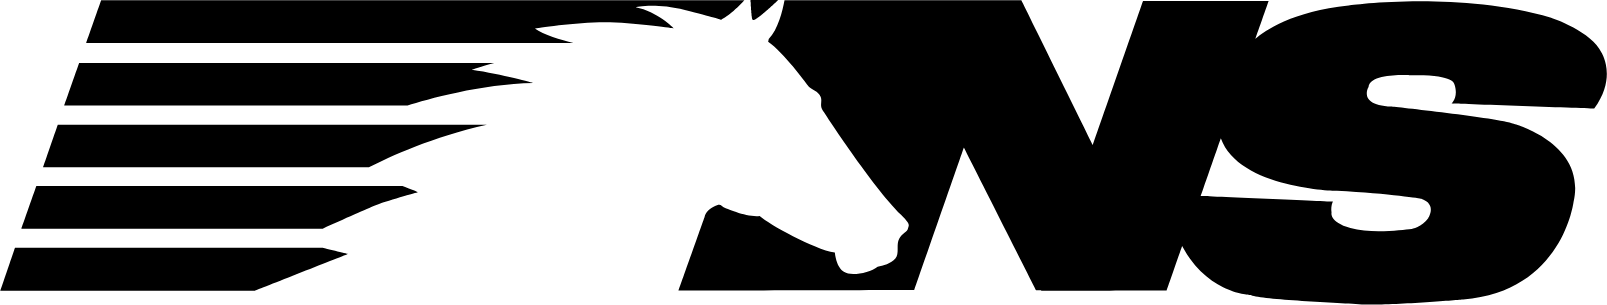 Norfolk Southern logo (PNG transparent)